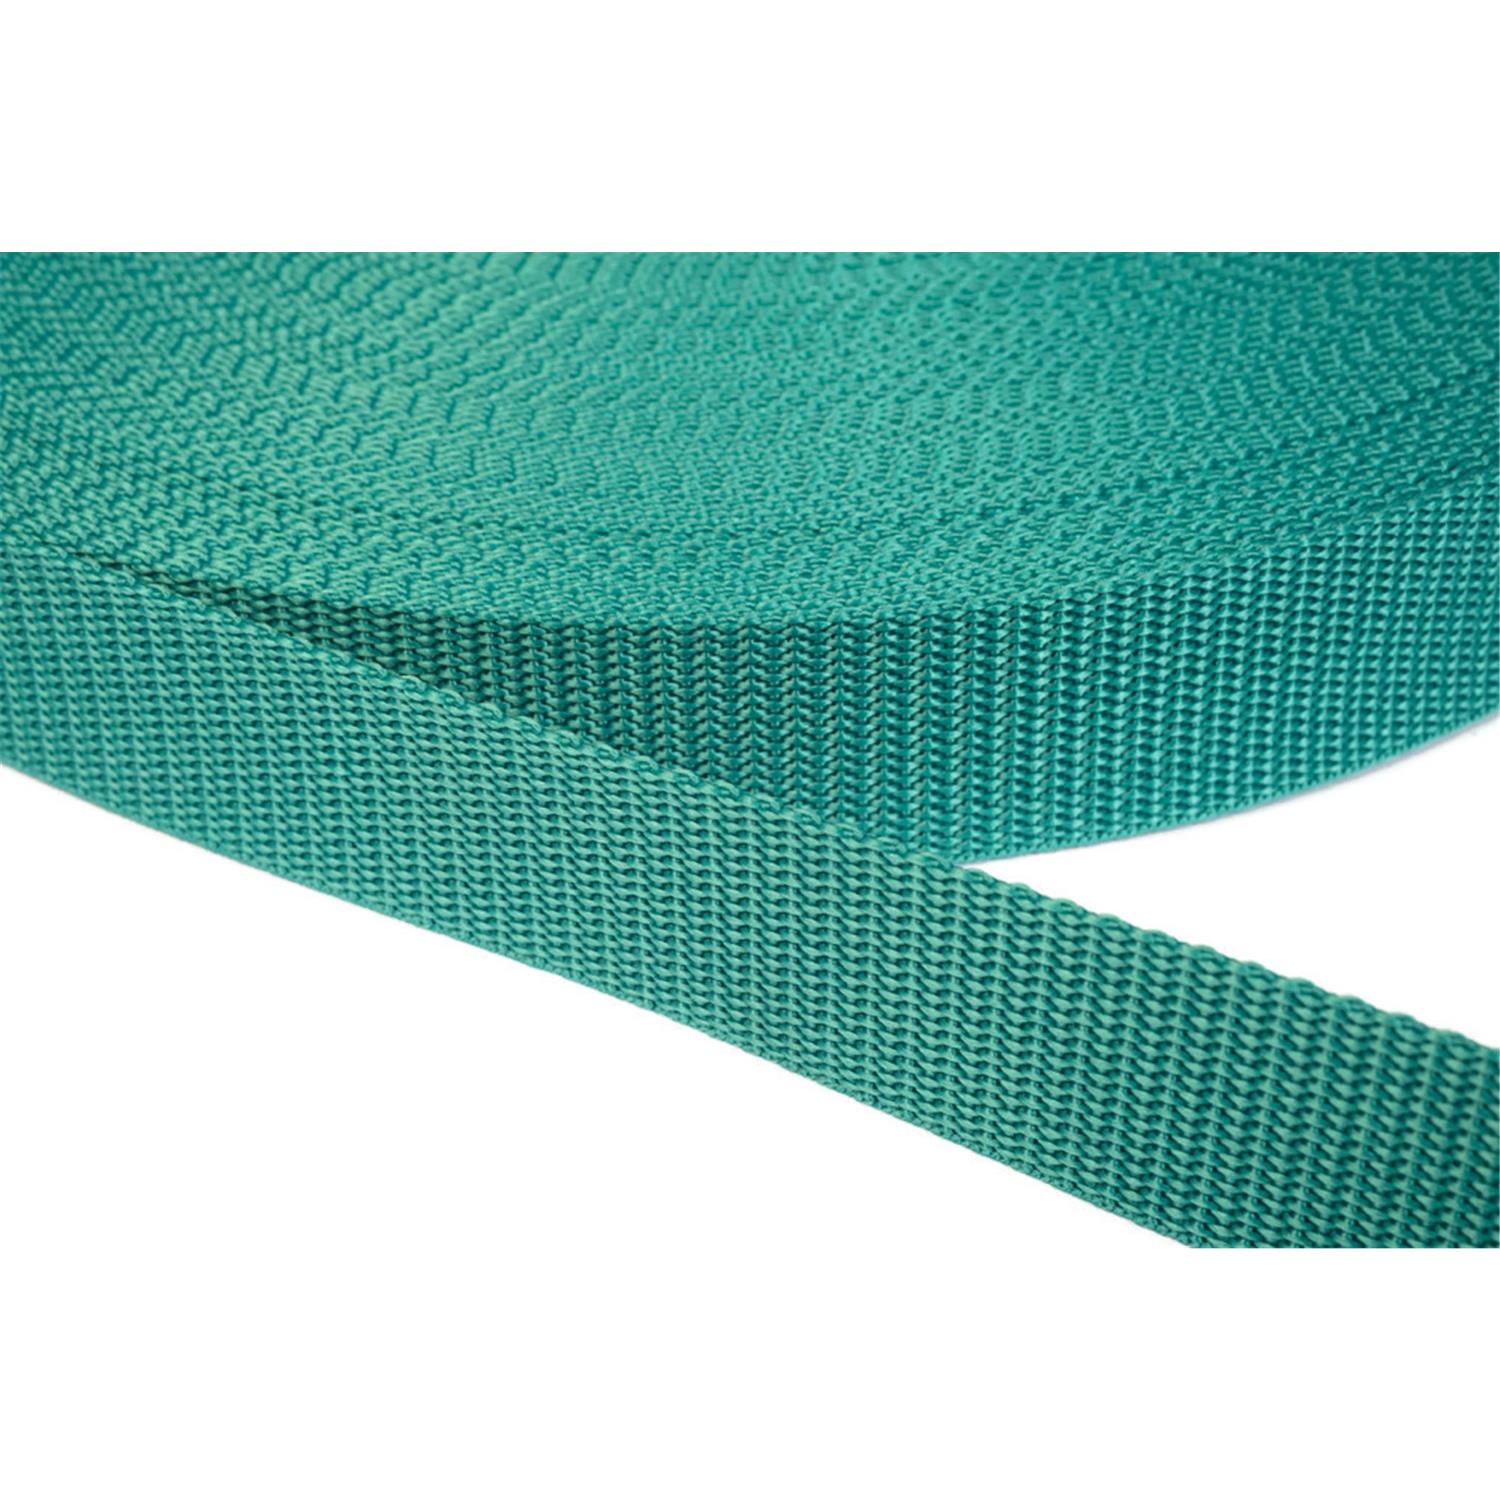 Gurtband 20mm breit aus Polypropylen in 41 Farben 31 - smaragdgrün 06 Meter